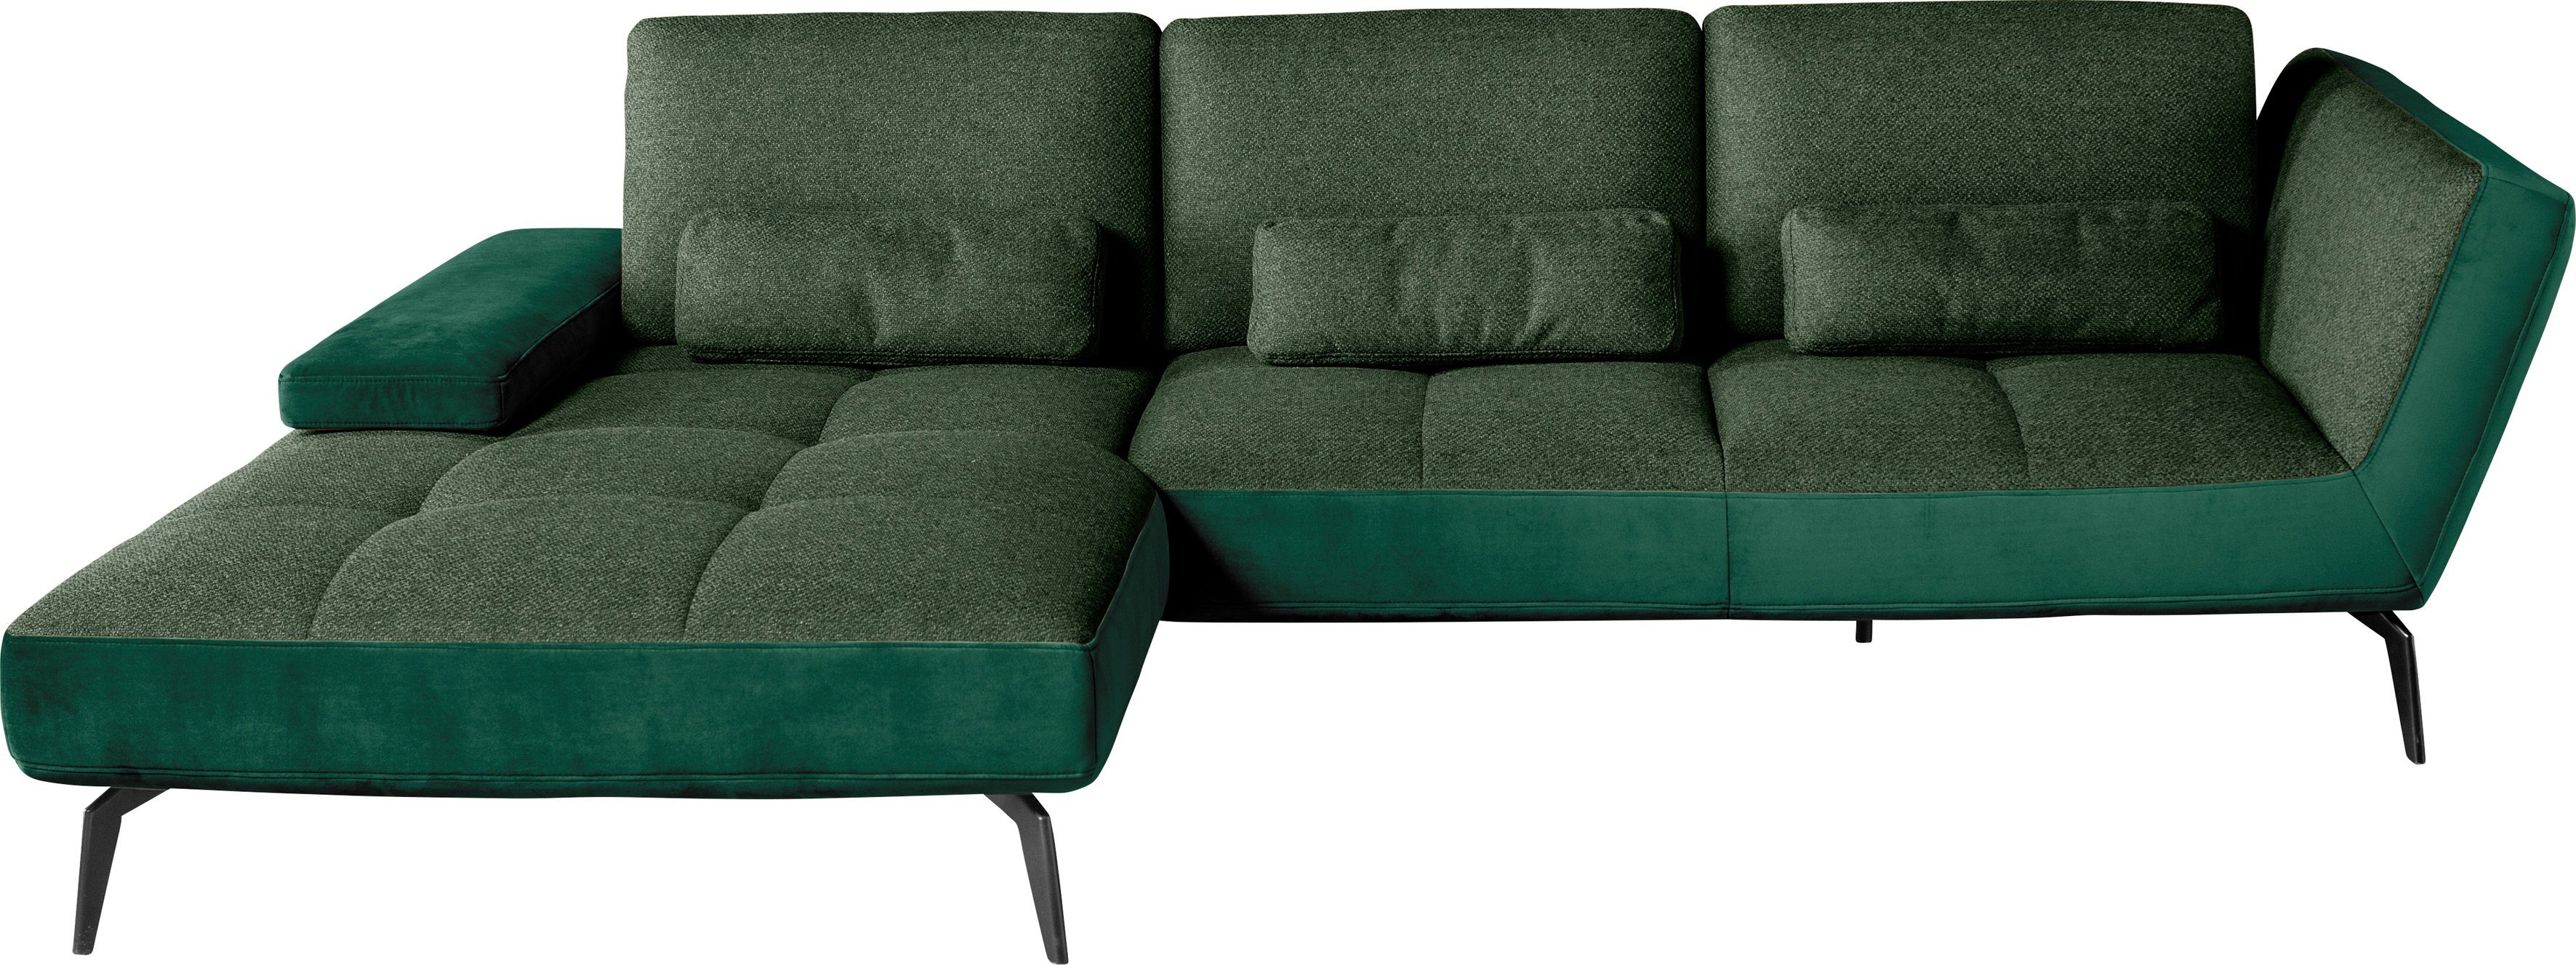 Musterring Nierenkissen one dunkelgrün162/dunkelgrün38 by SO und Ecksofa 4300, set Sitztiefenverstellung inklusive